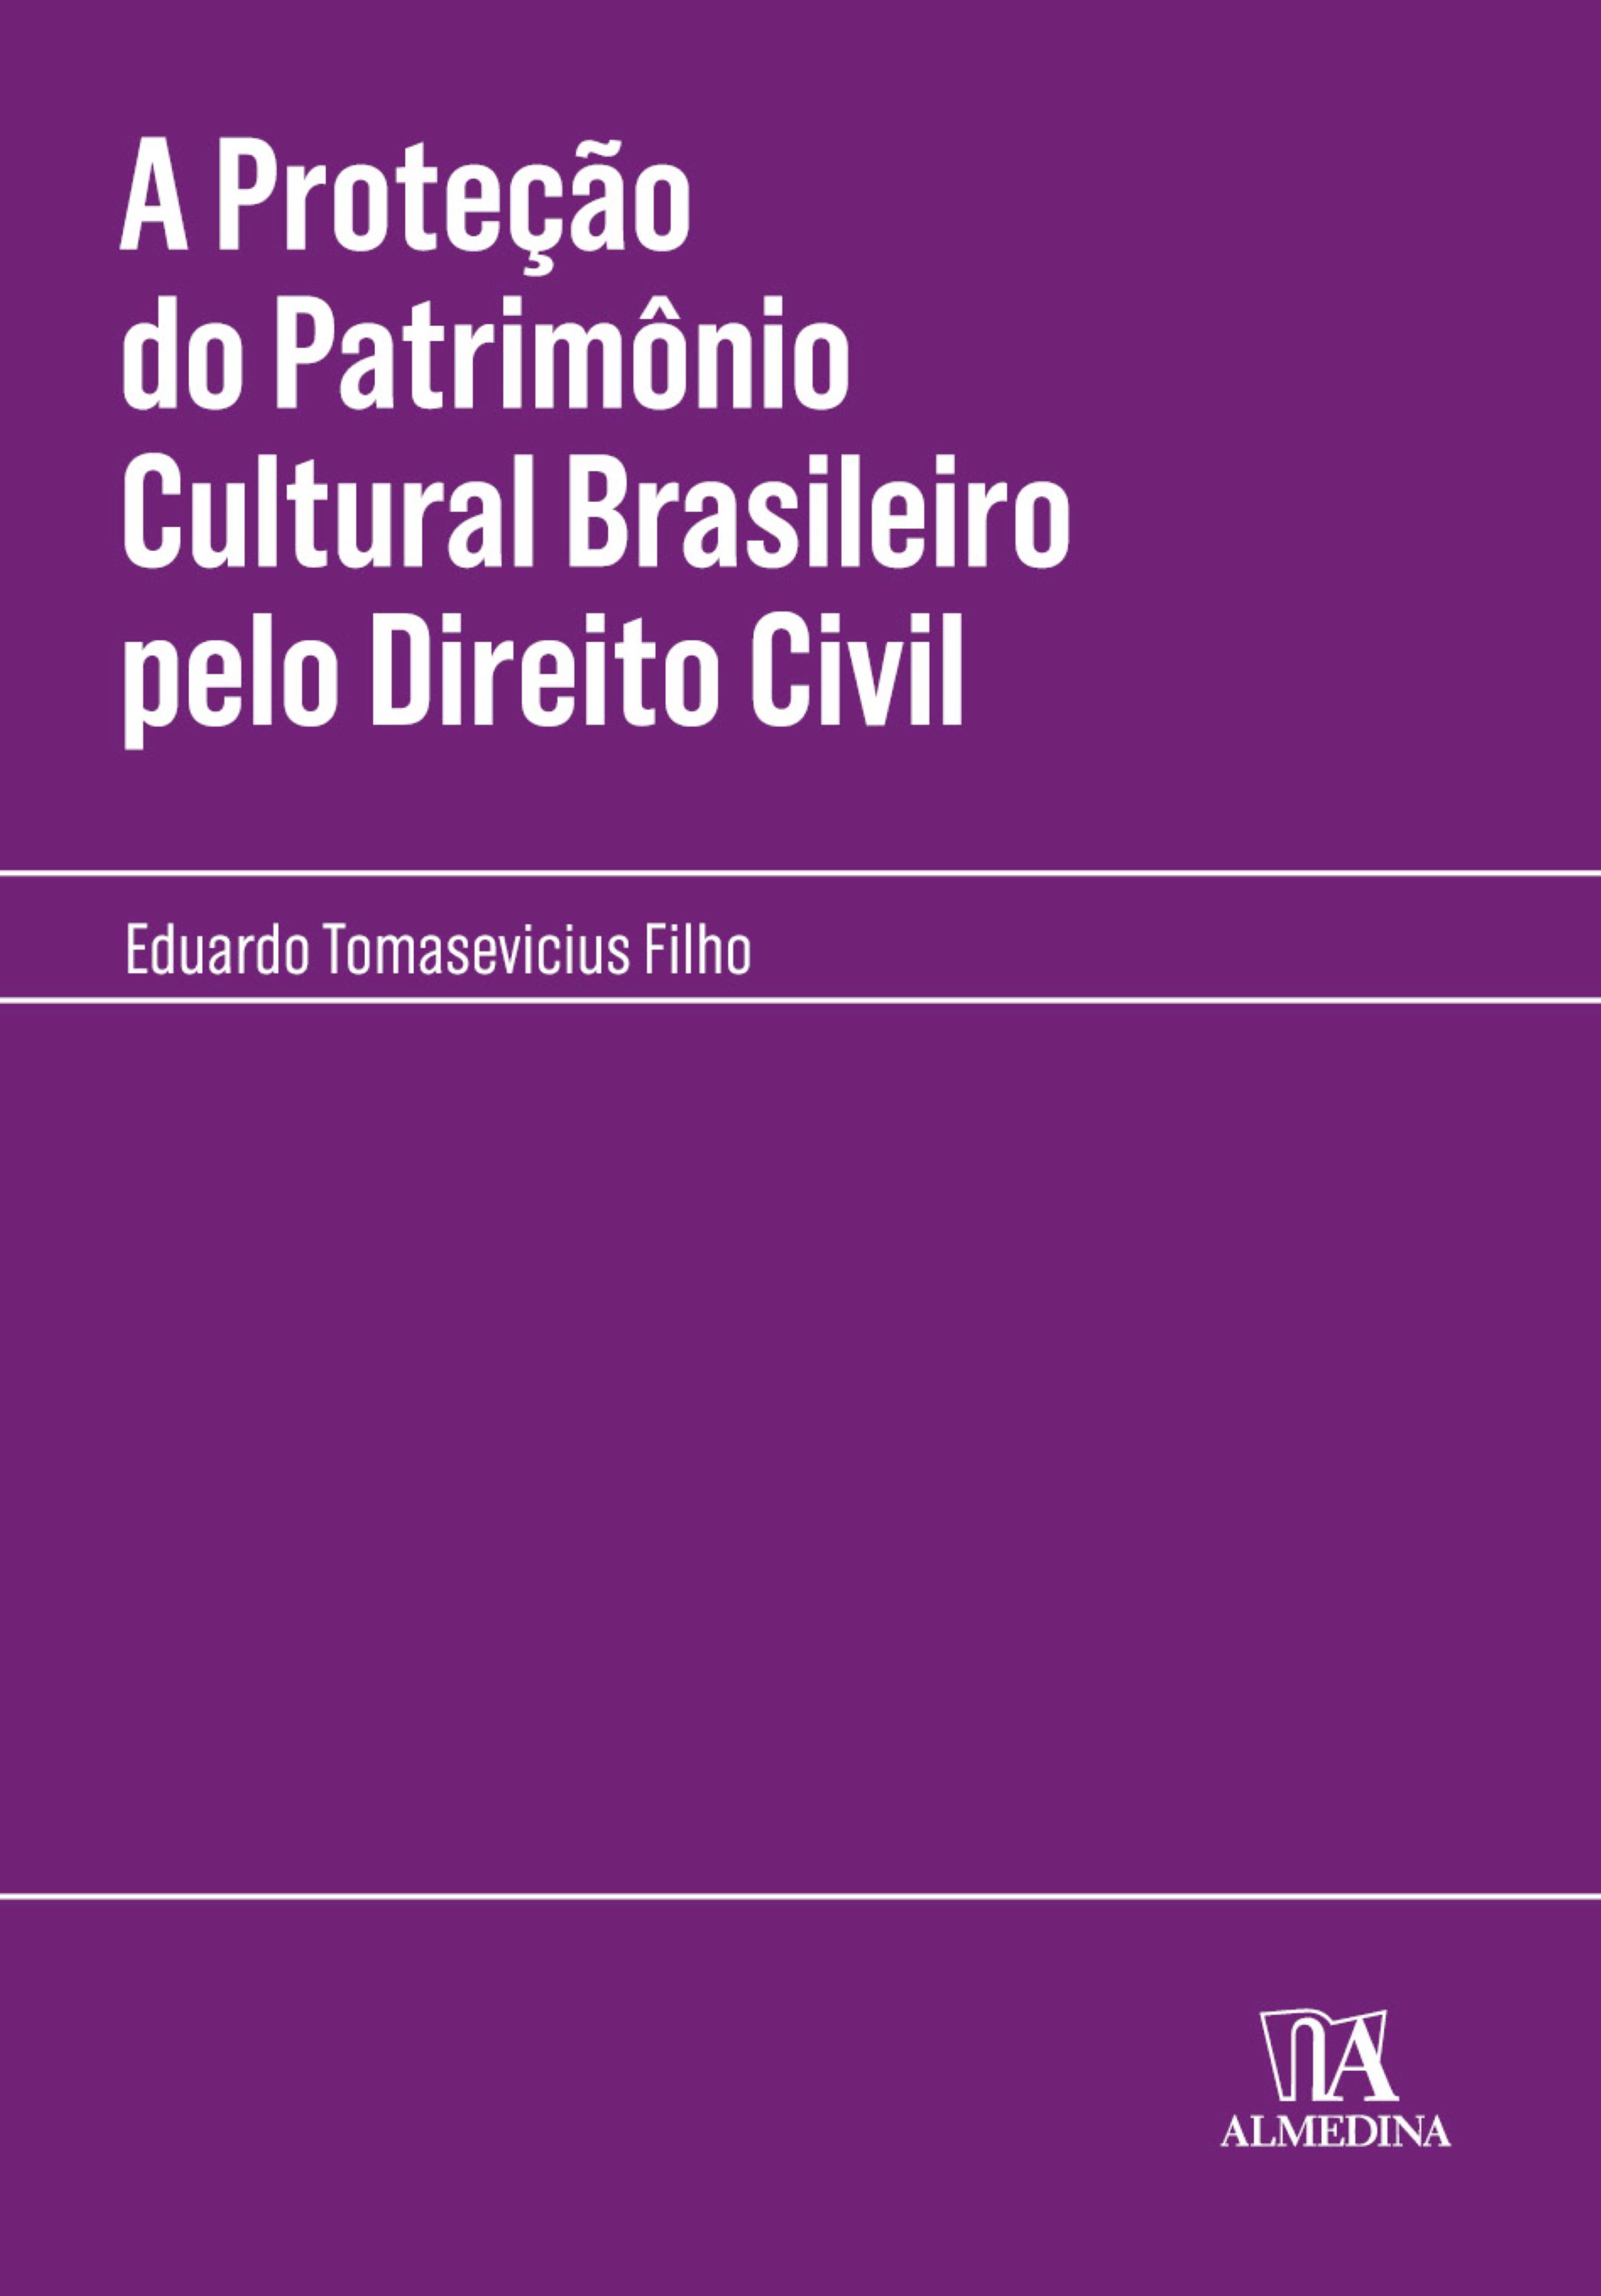 A Proteção do Patrimônio Cultural Brasileiro pelo Direito Civil